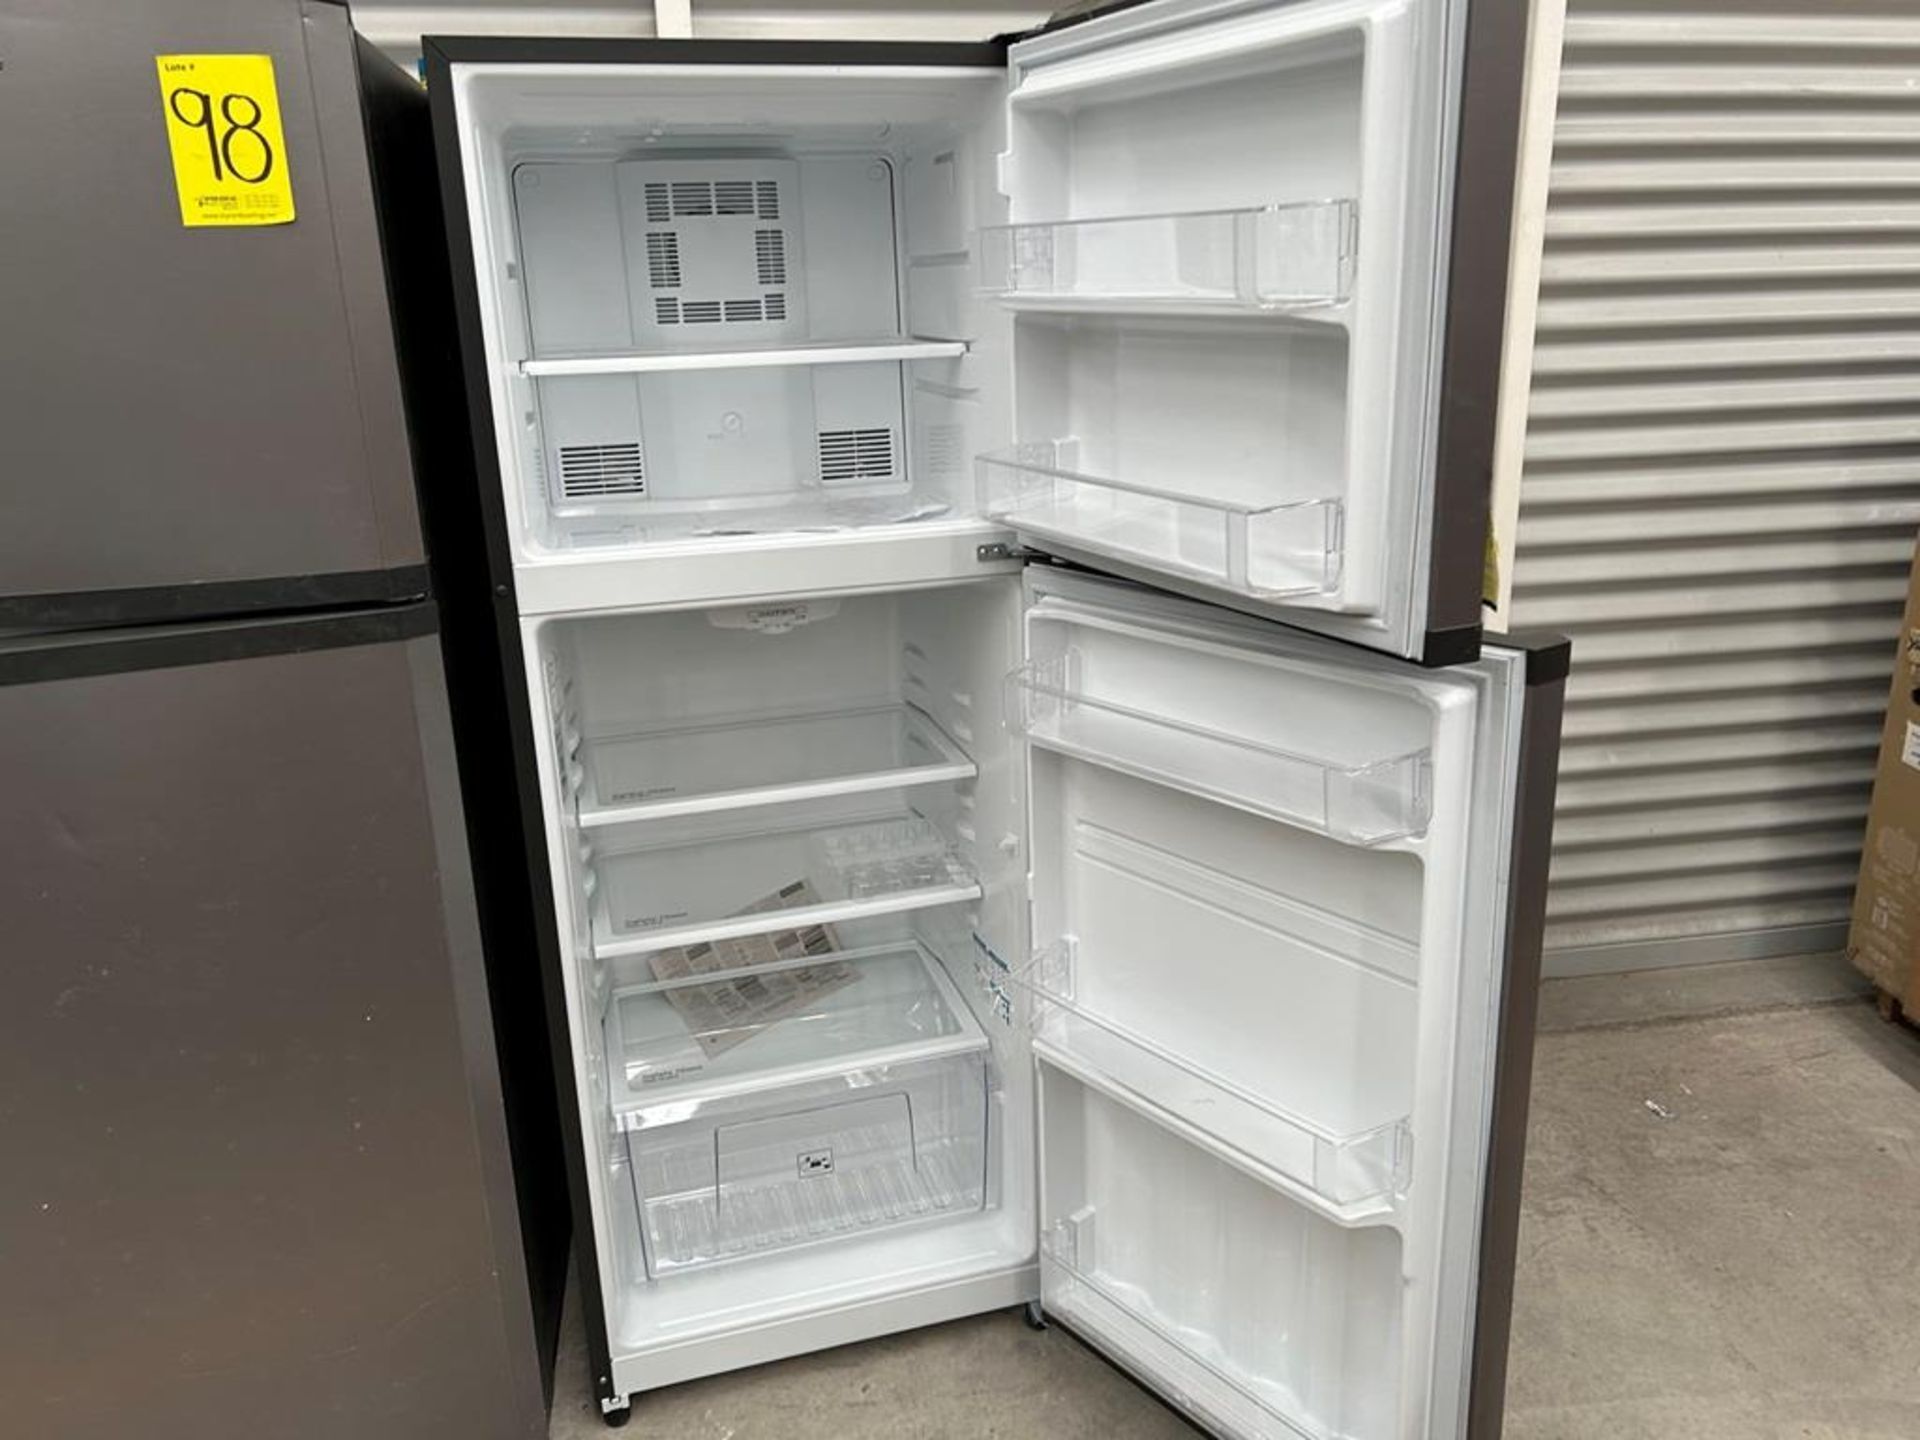 Lote de 2 refrigeradores contiene: 1 Refrigerador Marca MABE, Modelo RME360PVMRM0, Serie 04453, Col - Image 10 of 16